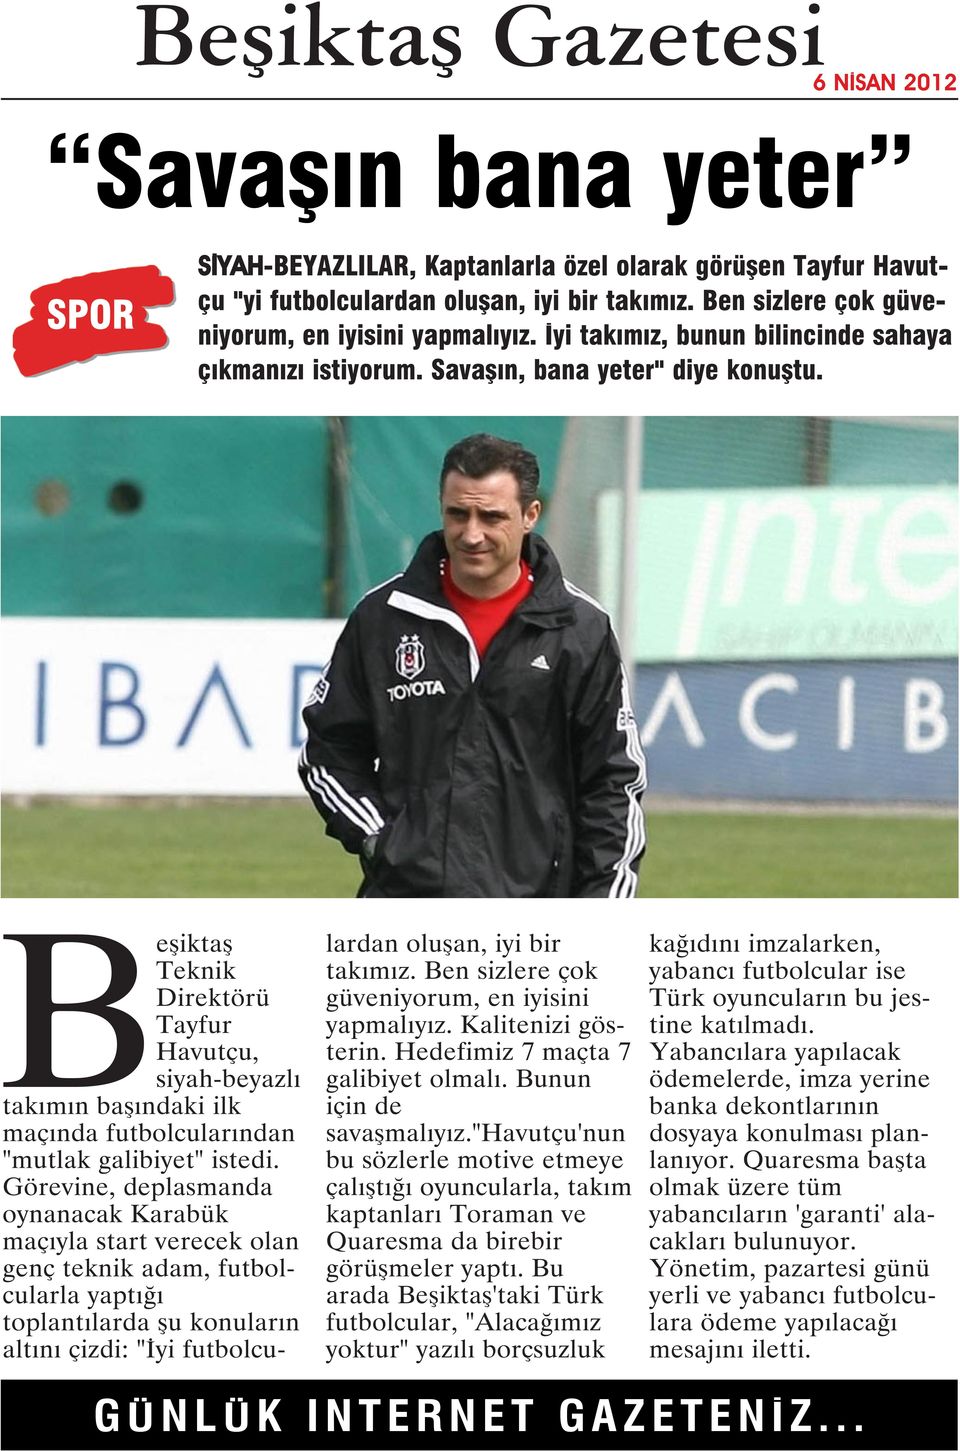 Beşiktaş Teknik Direktörü Tayfur Havutçu, siyah-beyazlı takımın başındaki ilk maçında futbolcularından "mutlak galibiyet" istedi.